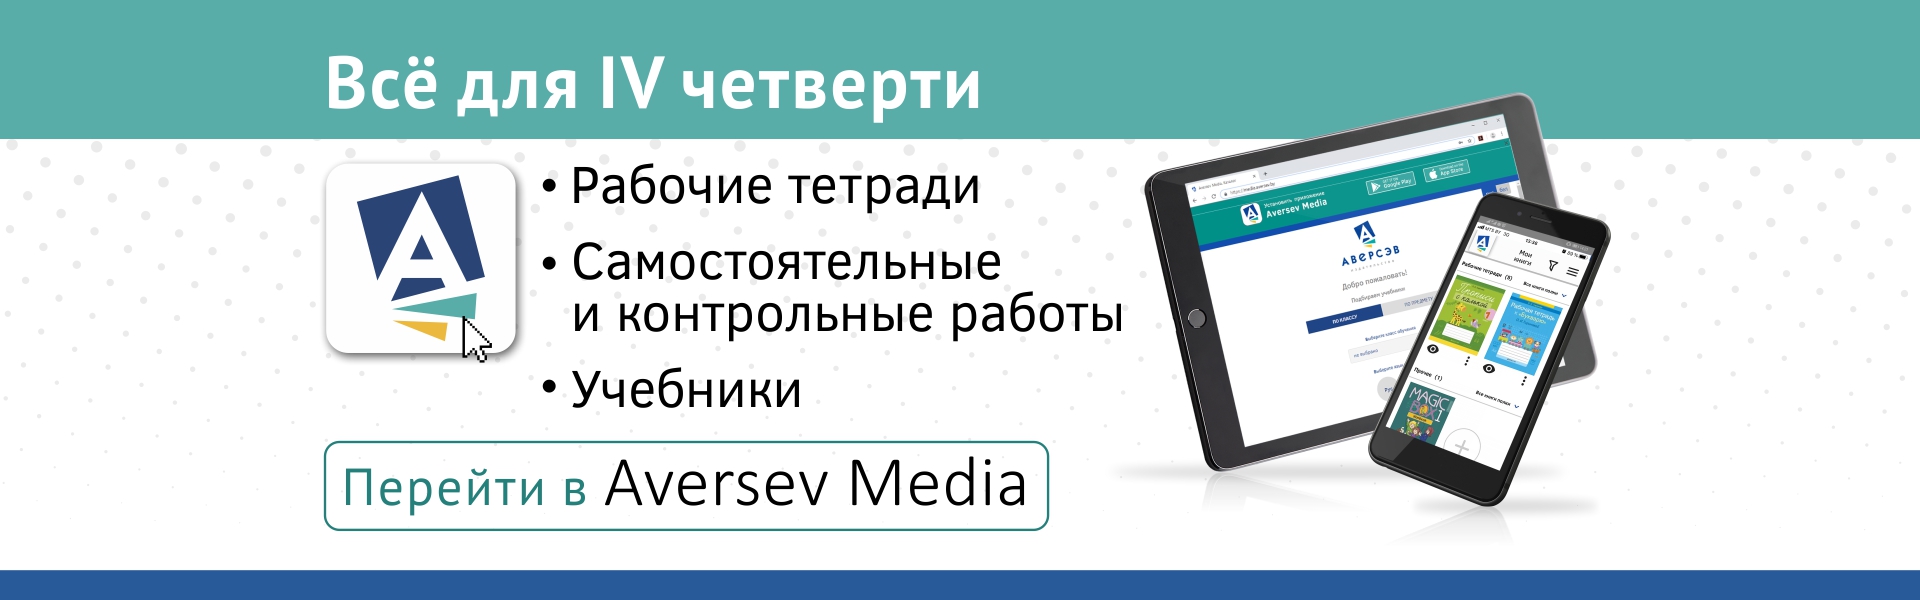 В Aversev Media добавлены рабочие тетради и пособия для IV четверти